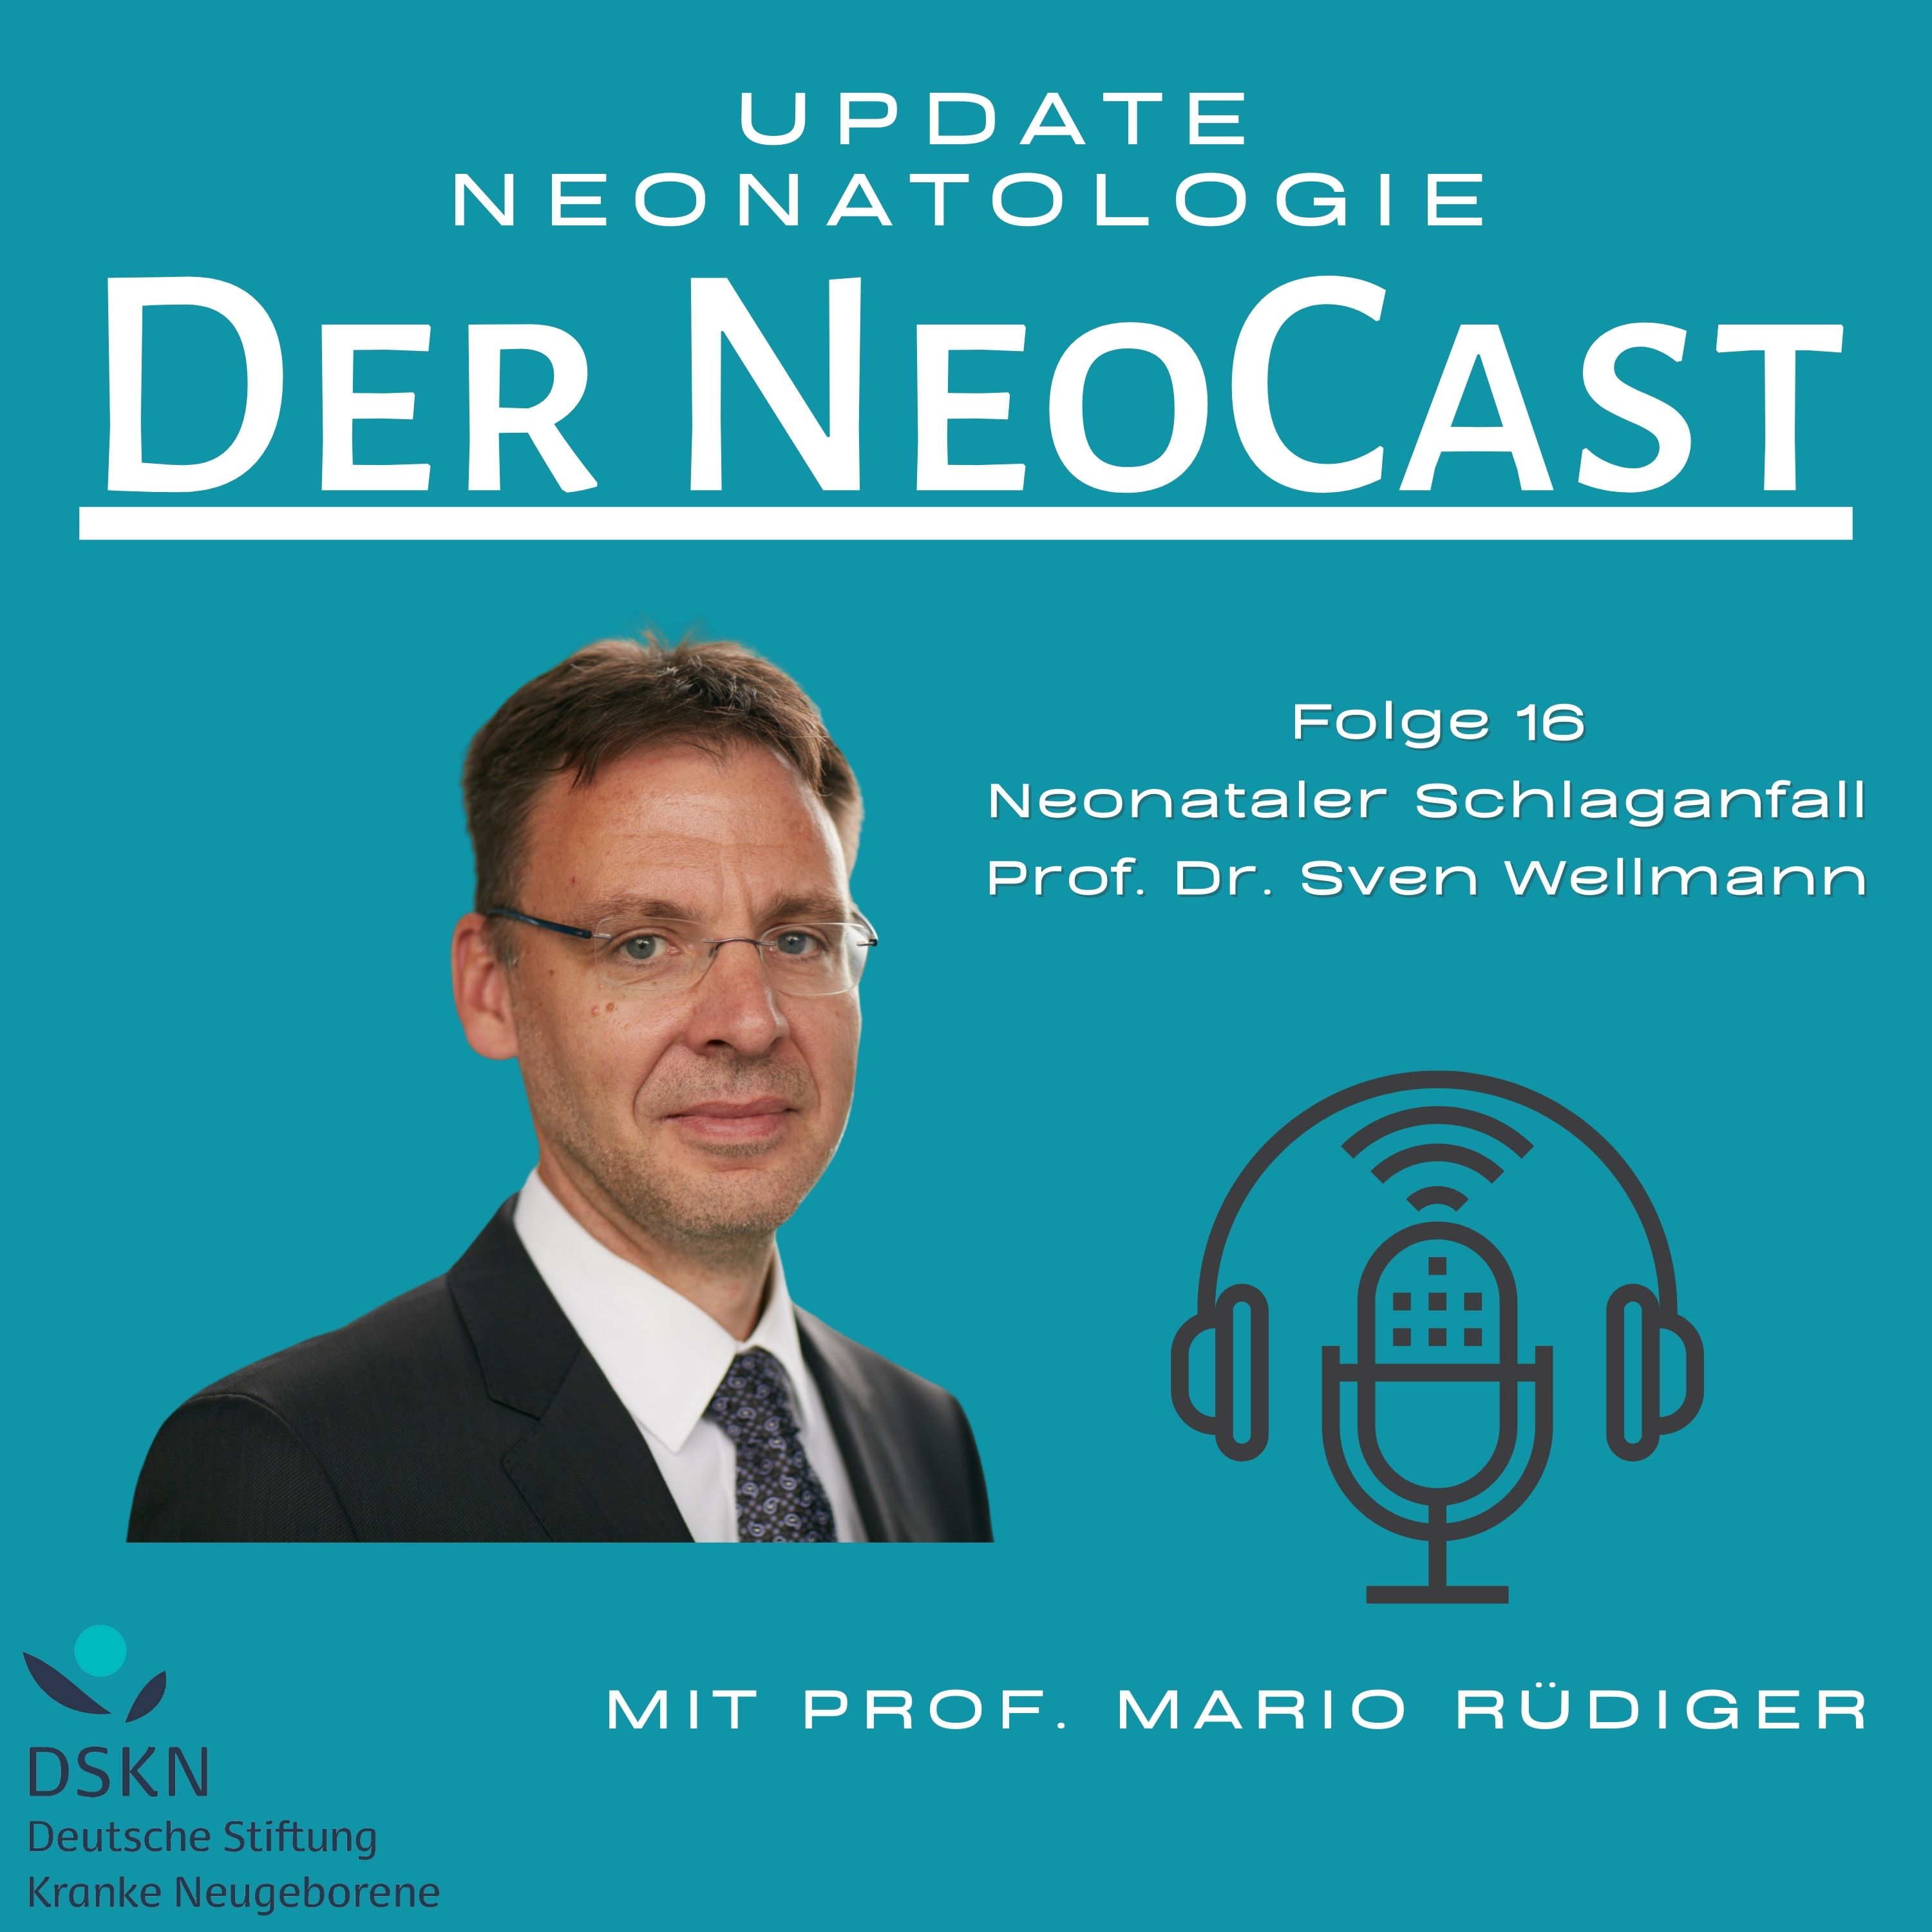 Schlaganfälle bei Neugeborenen mit Prof. Dr. Sven Wellmann